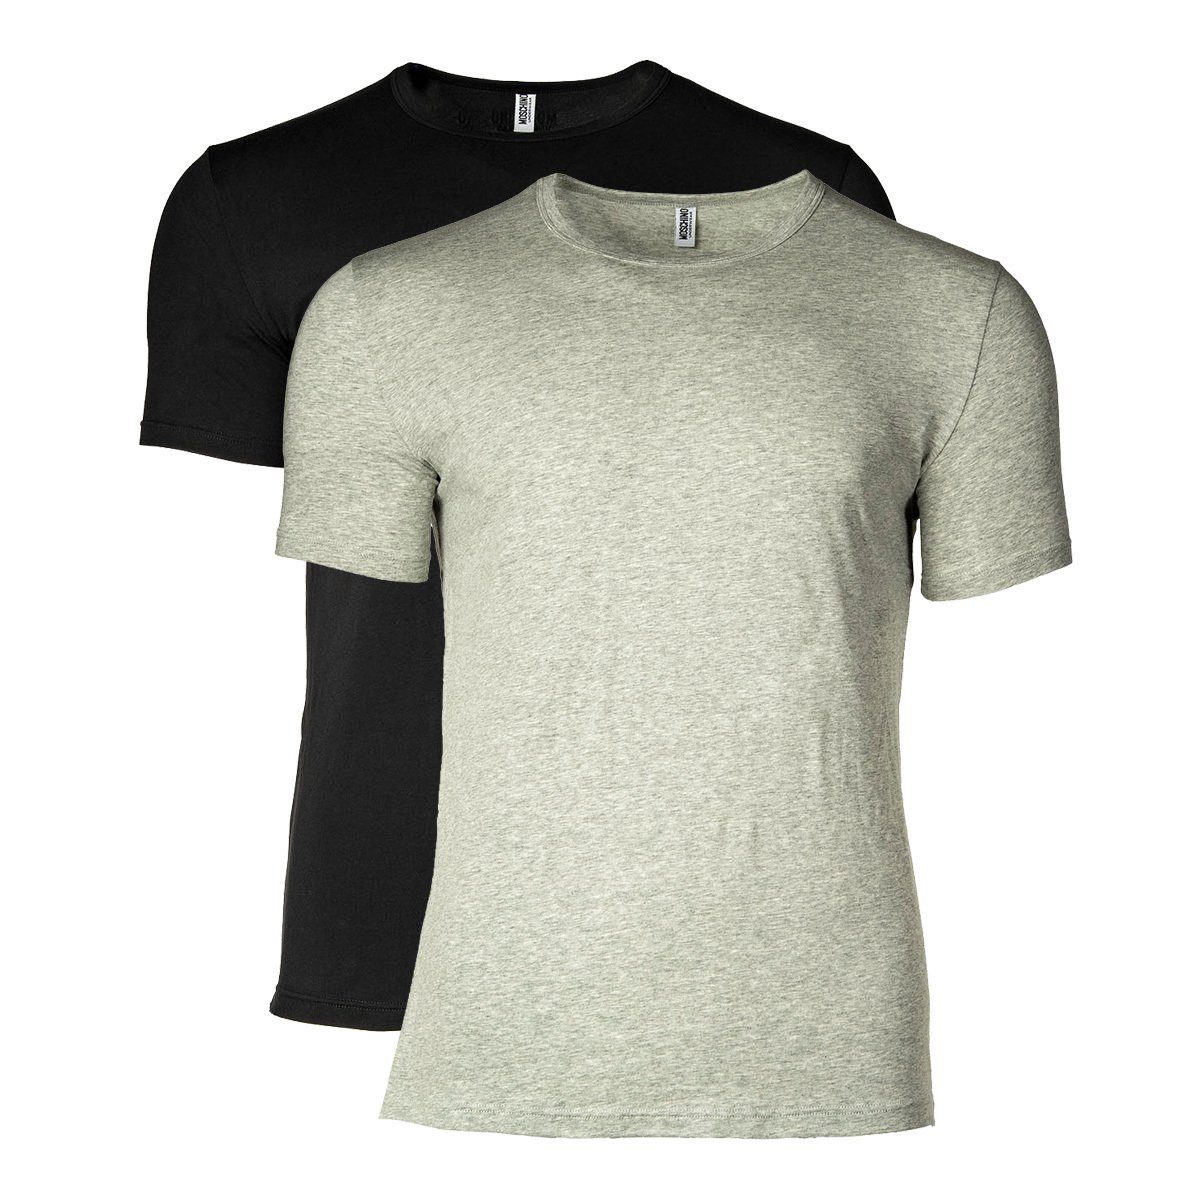 Moschino T-Shirt Herren T-Shirt 2er Pack - Crew Neck, Rundhals